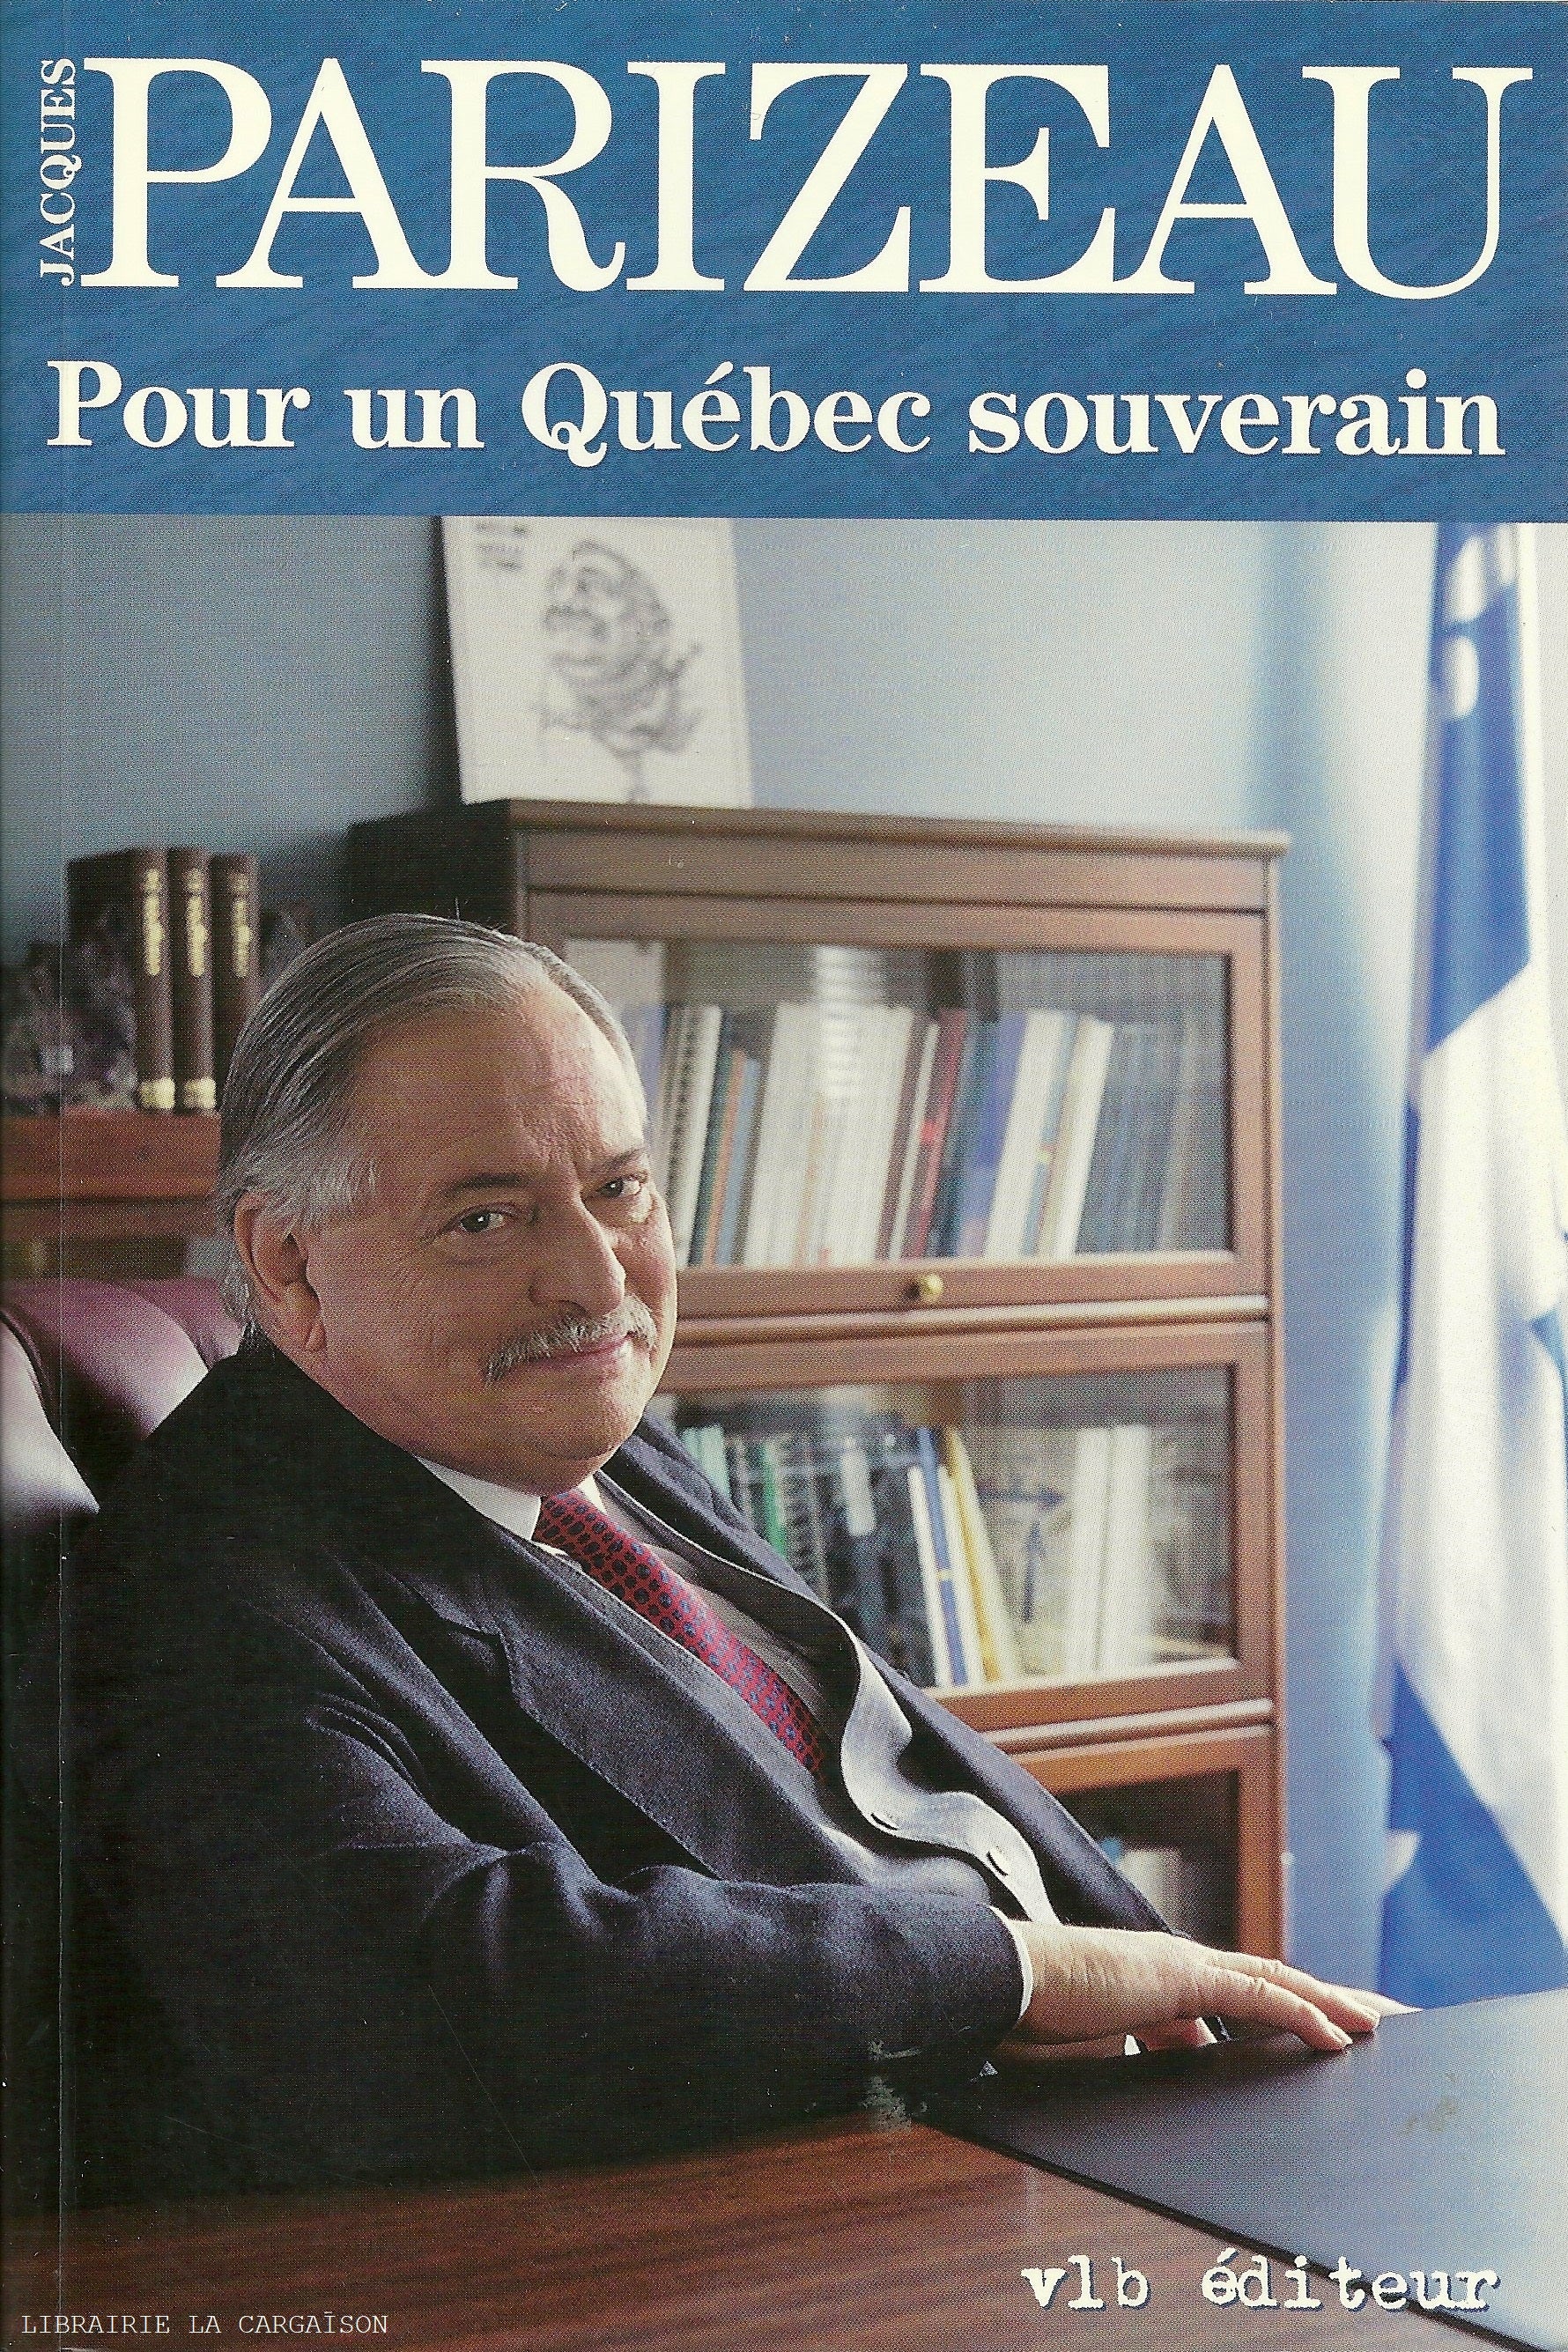 PARIZEAU, JACQUES. Pour un Québec souverain